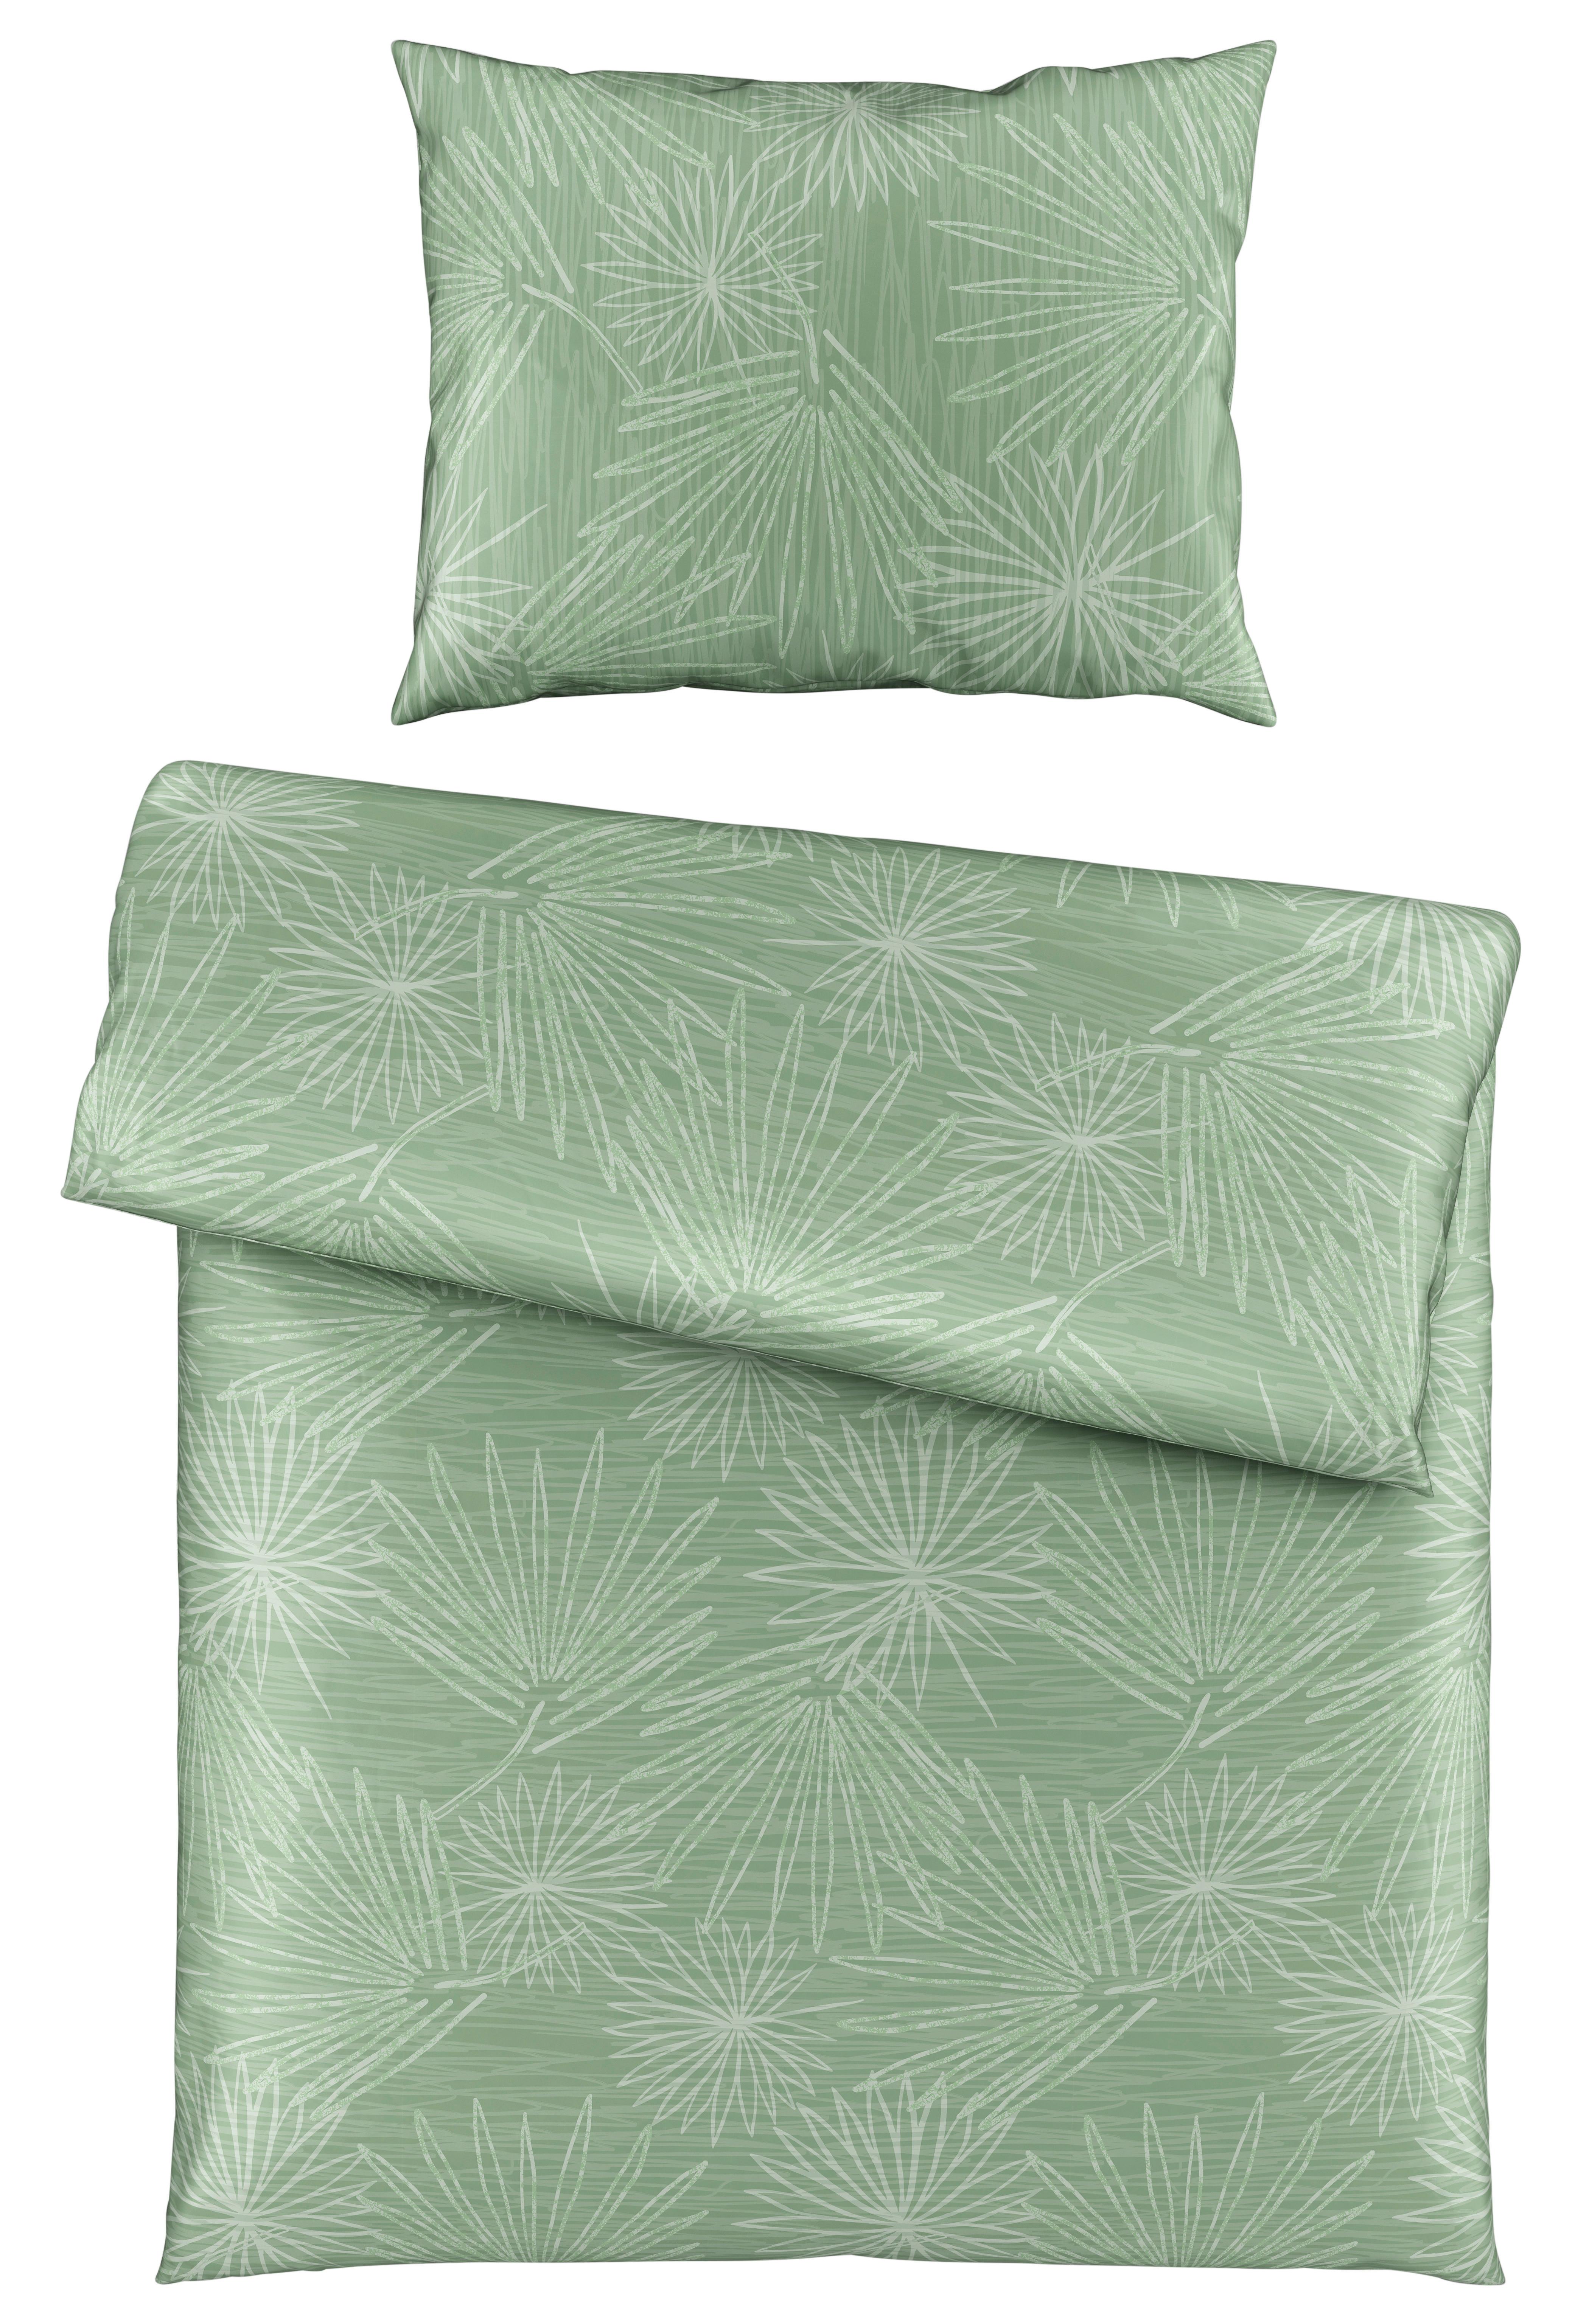 Lenjerie de pat Cora - verde, Konventionell, textil (140/200cm) - Premium Living